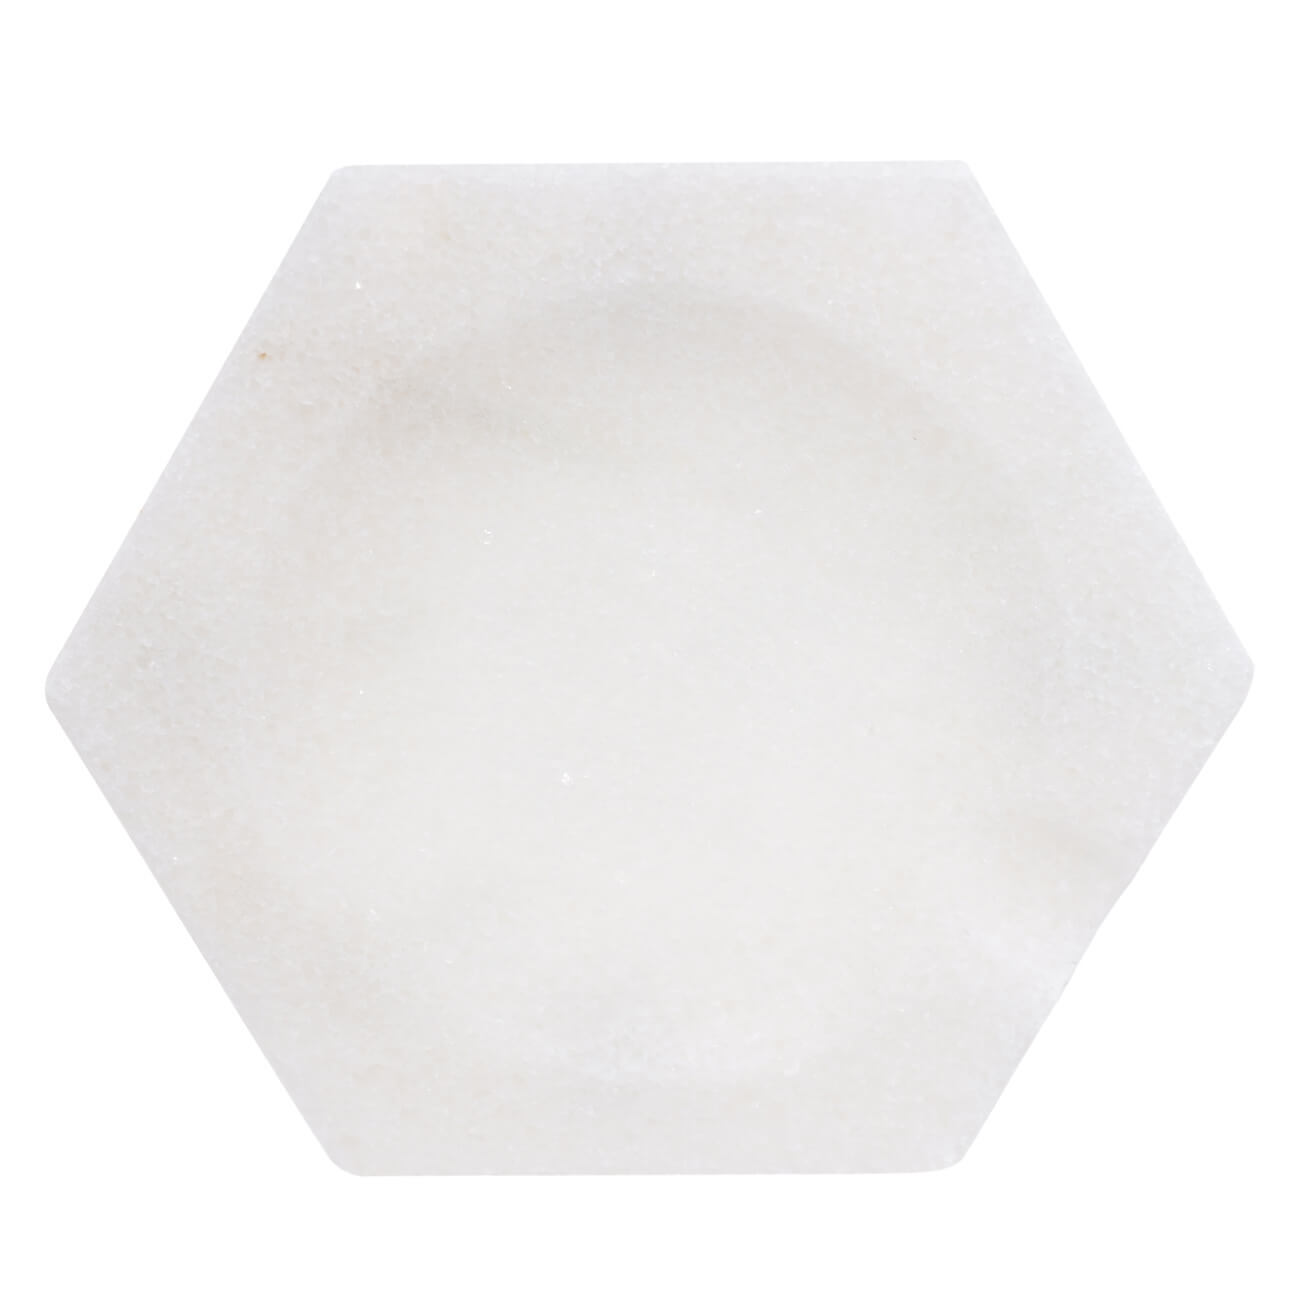 Подставка под ложку, 13х15 см, мрамор, белая, Шестигранник, Marble подставка для кухонных принадлежностей 13 см мрамор белая classic marble